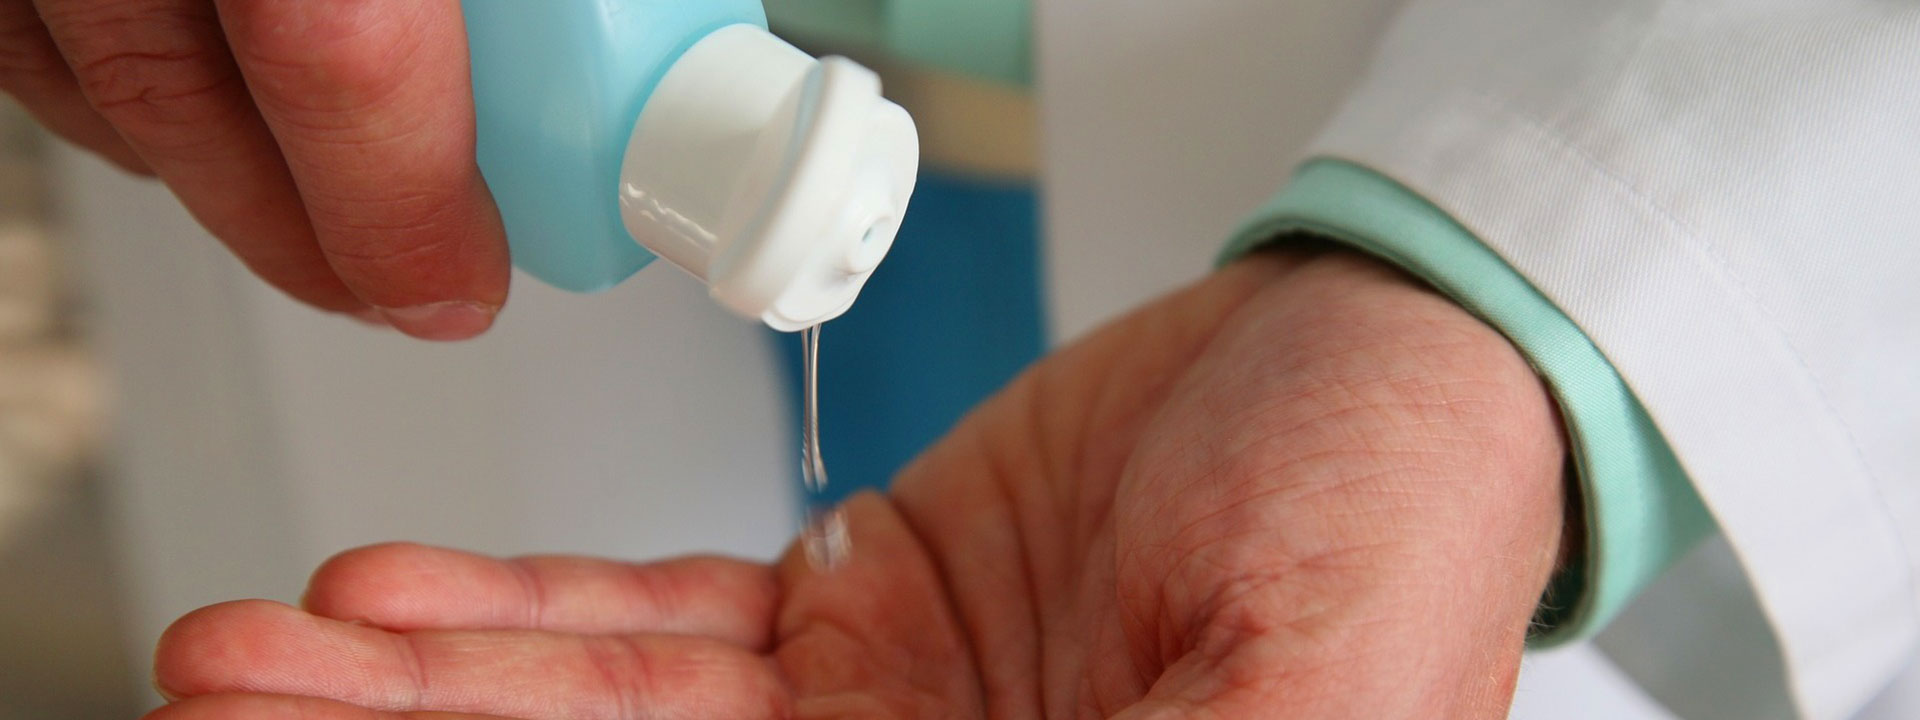 Método de prueba estándar ASTM E2613-14 para determinar la eficacia antifúngica del lavado de manos higiénico y frotamientos de manos con almohadillas para los dedos para adultos